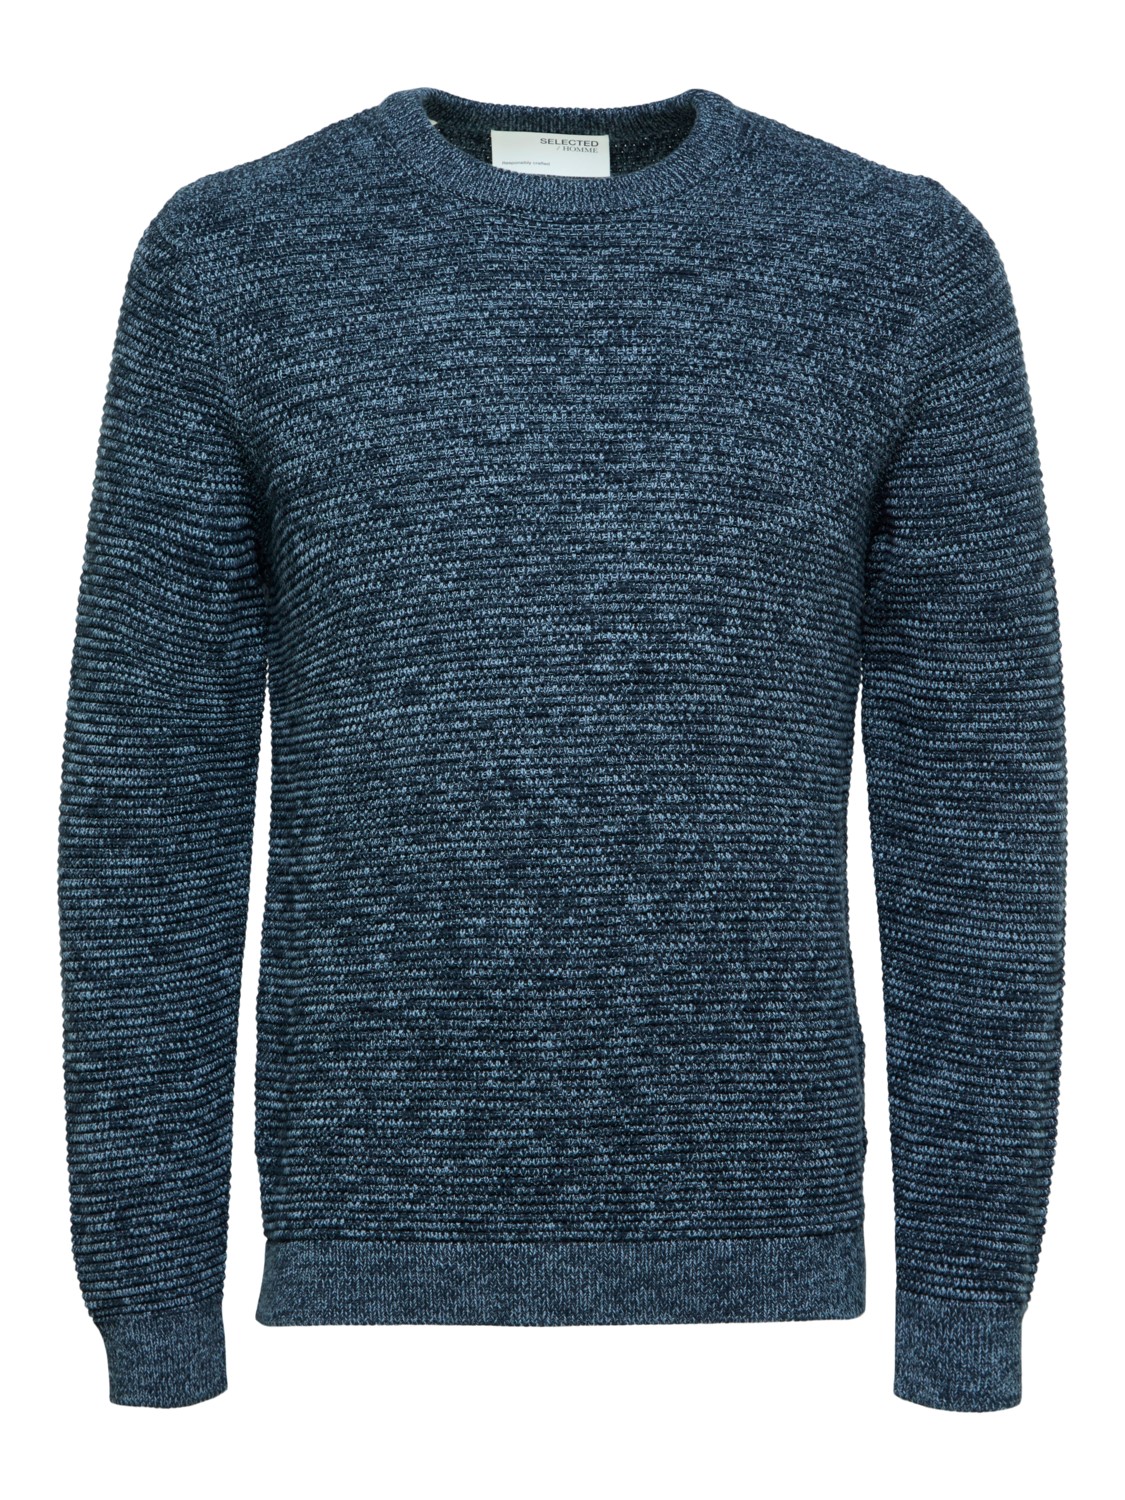 Пуловер SELECTED HOMME SLHVINCE, синий пуловер selected homme slhvince коричневый